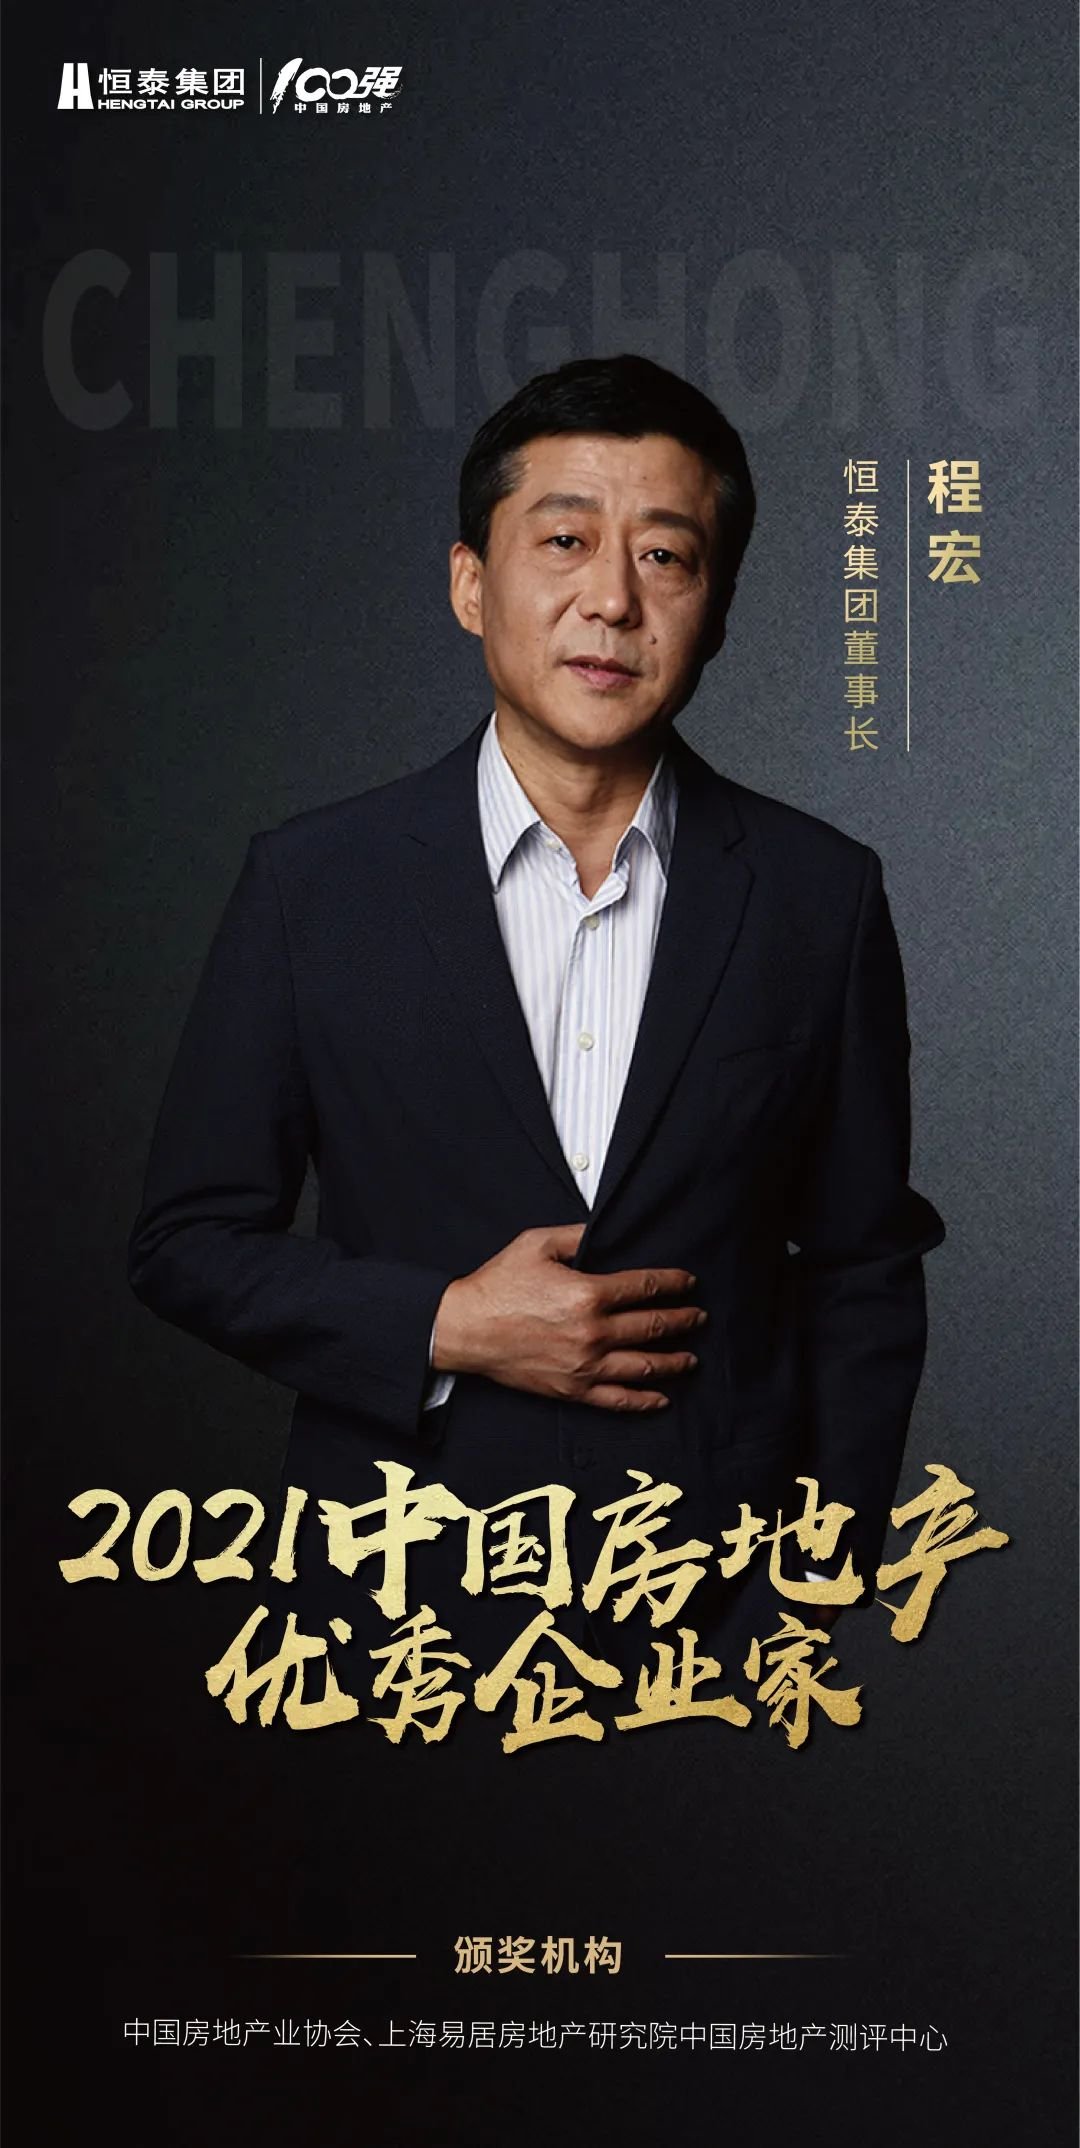 恒泰集团董事长程宏先生获评“2021中国房地产企业家”